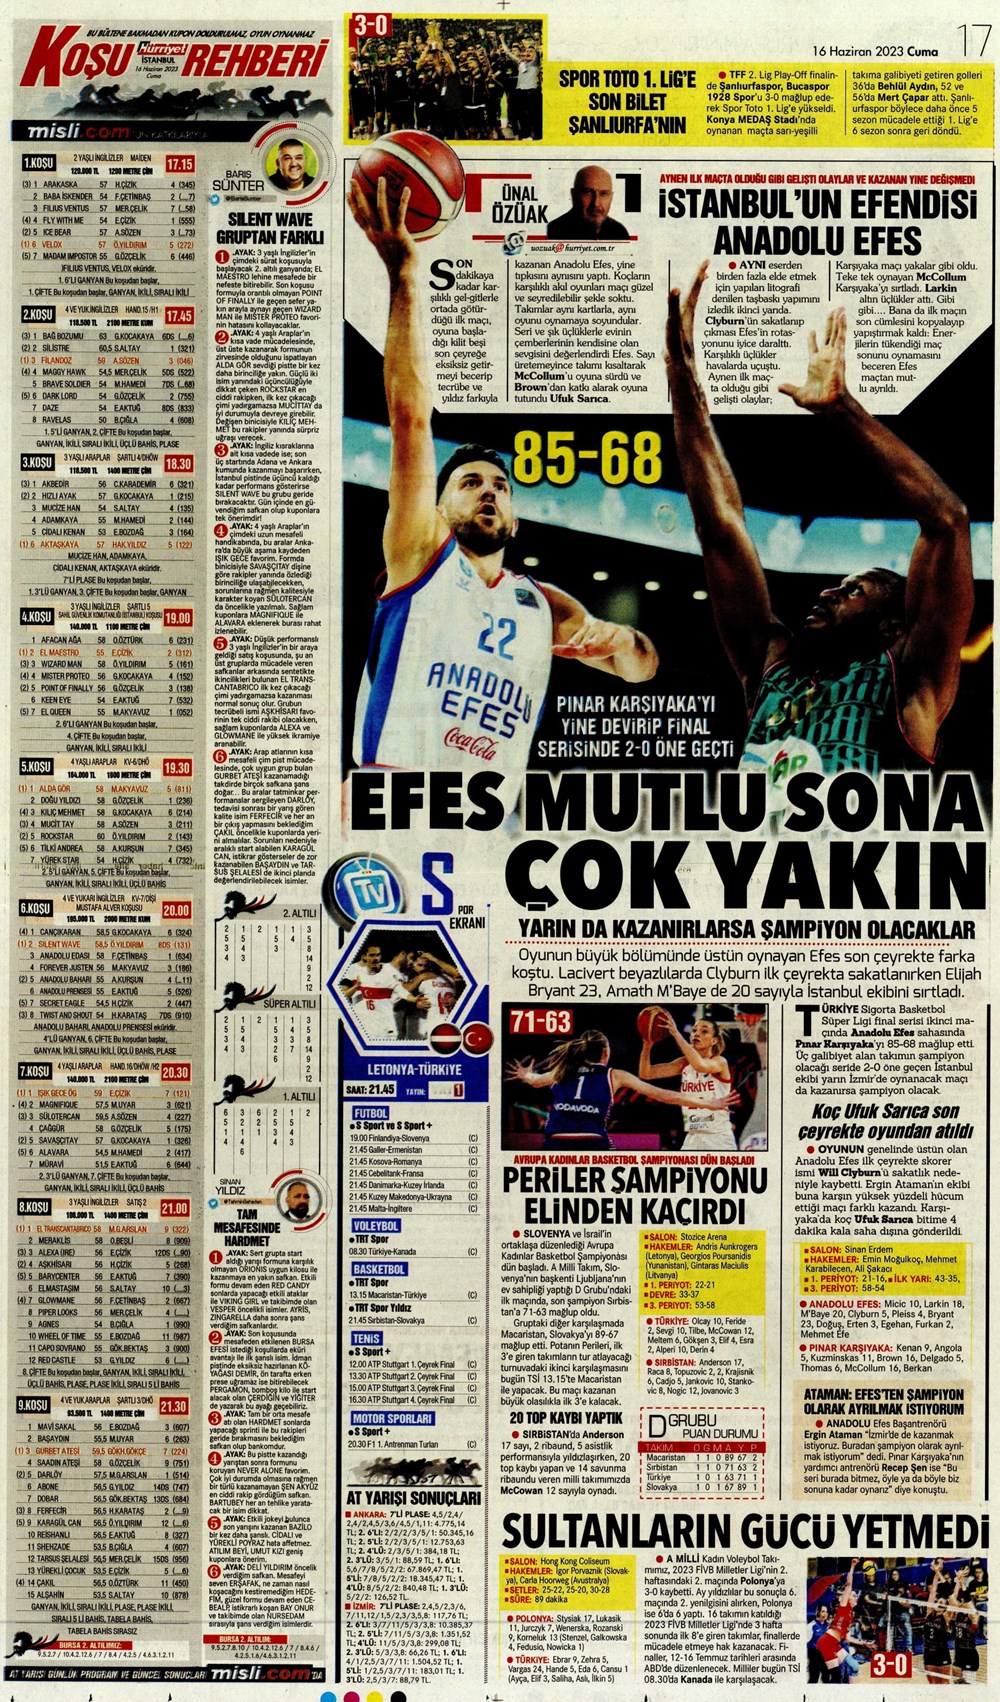 "Dzeko çok yakın" Sporun manşetleri (16 Haziran 2023)  - 15. Foto